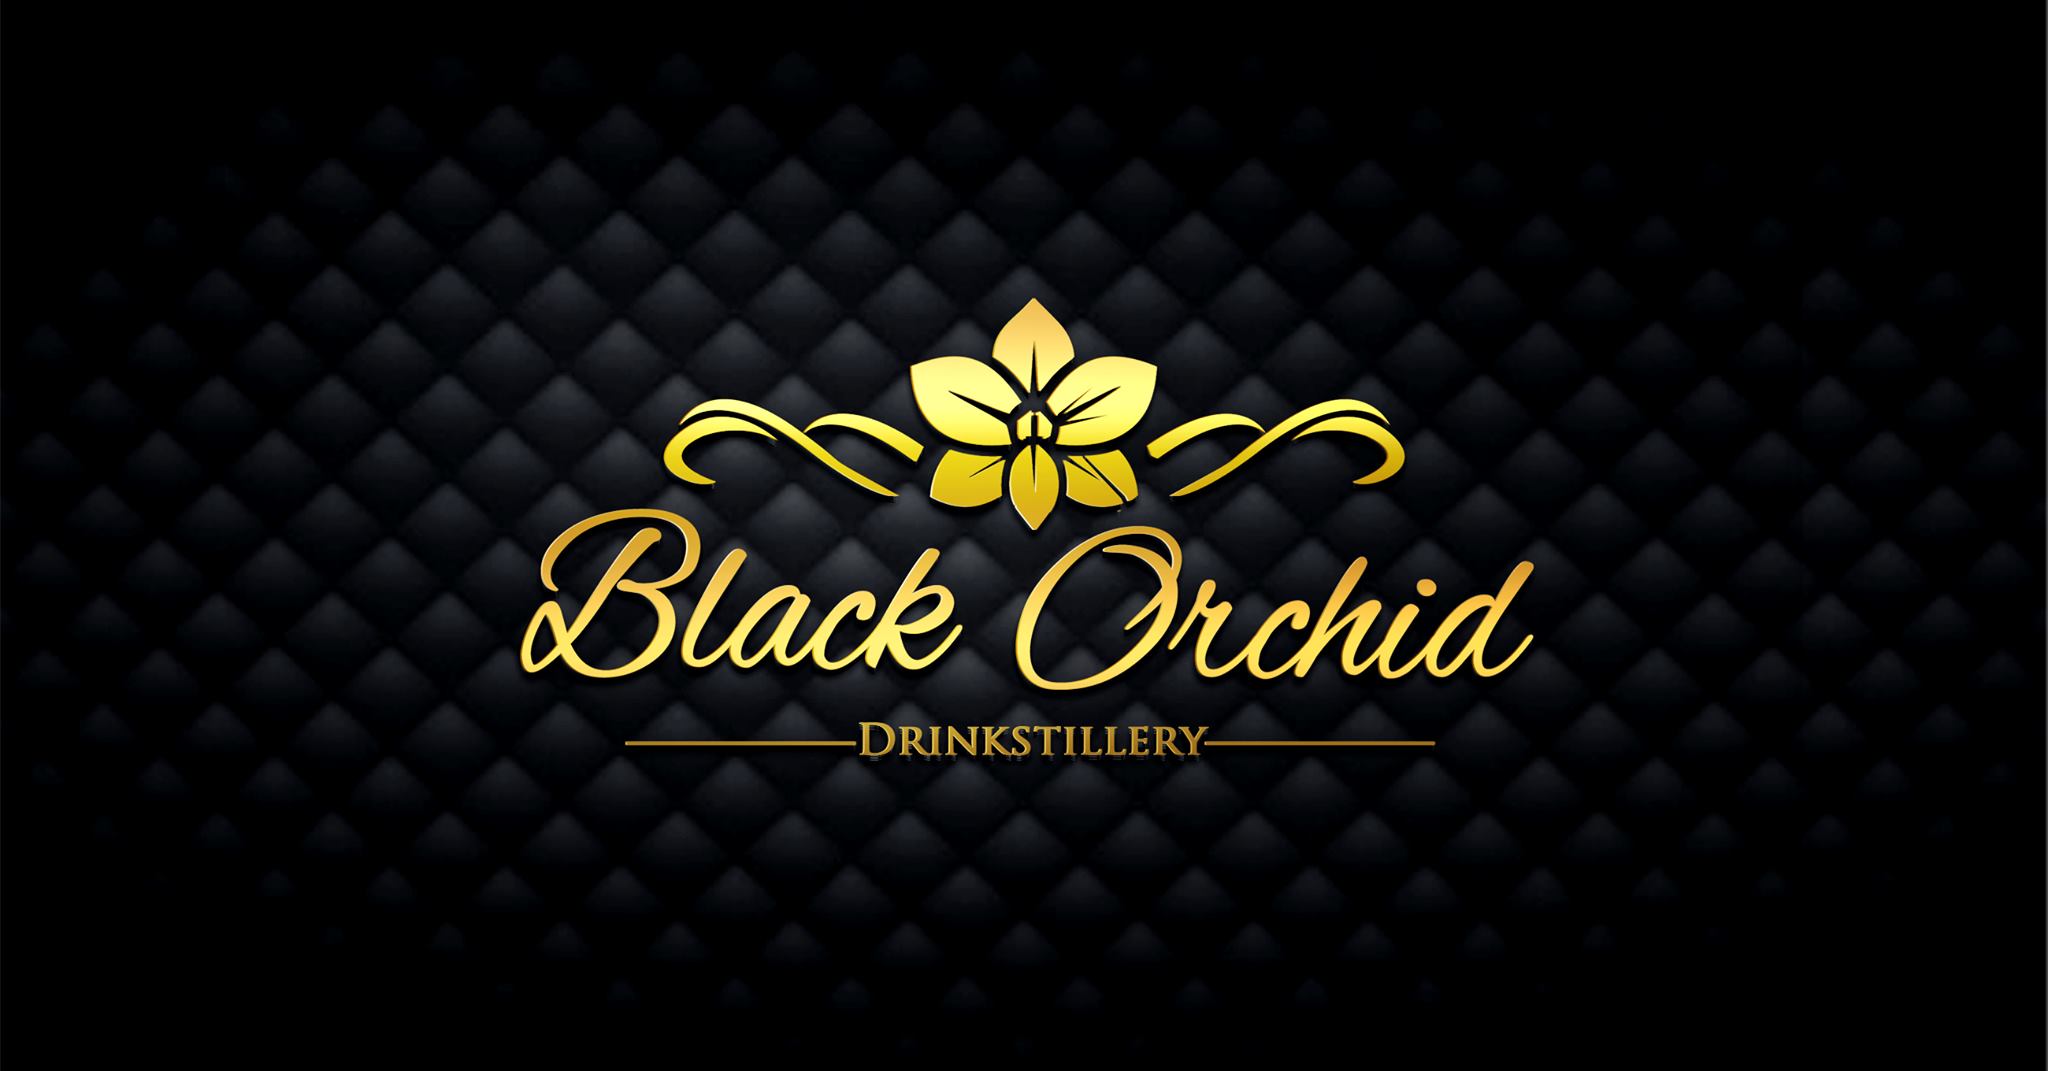 Black Orchid Drinkstillery